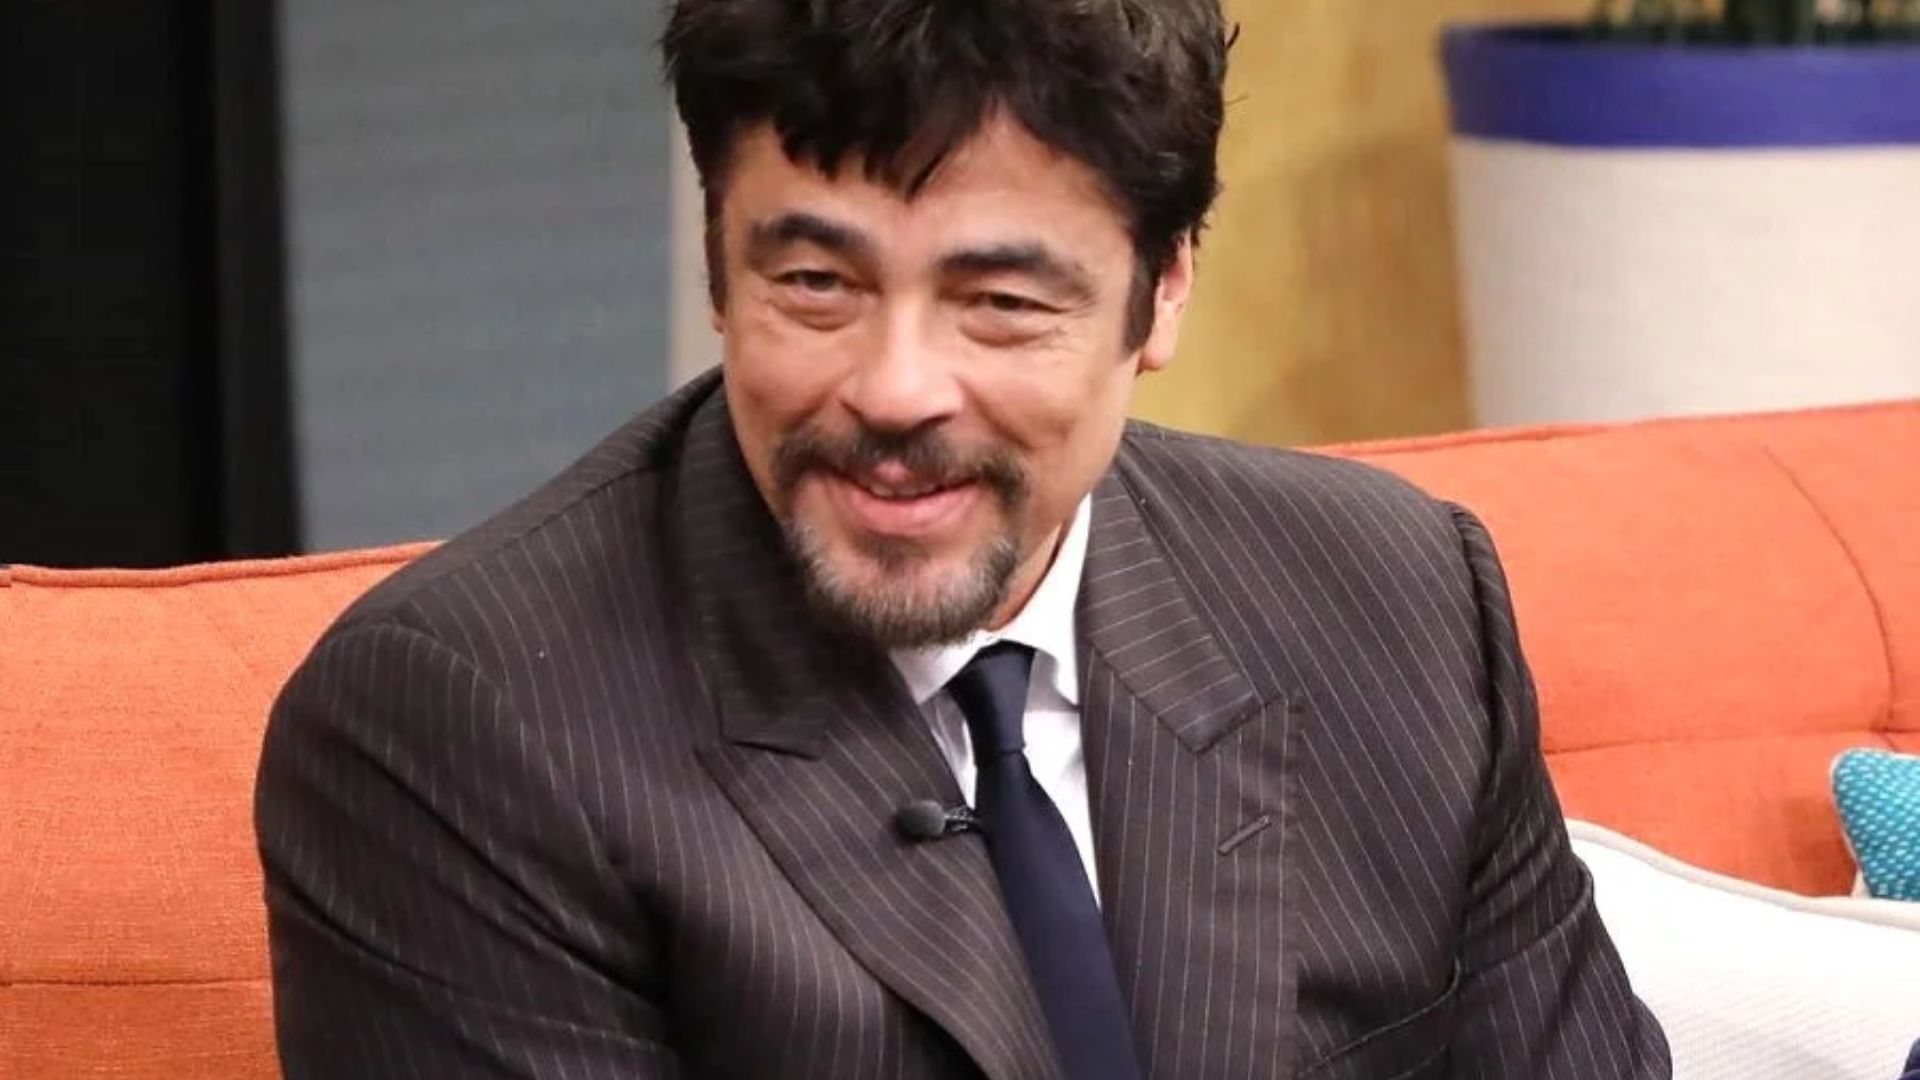 Benicio Del Toro - A Puerto Rican Actor And Film Producer